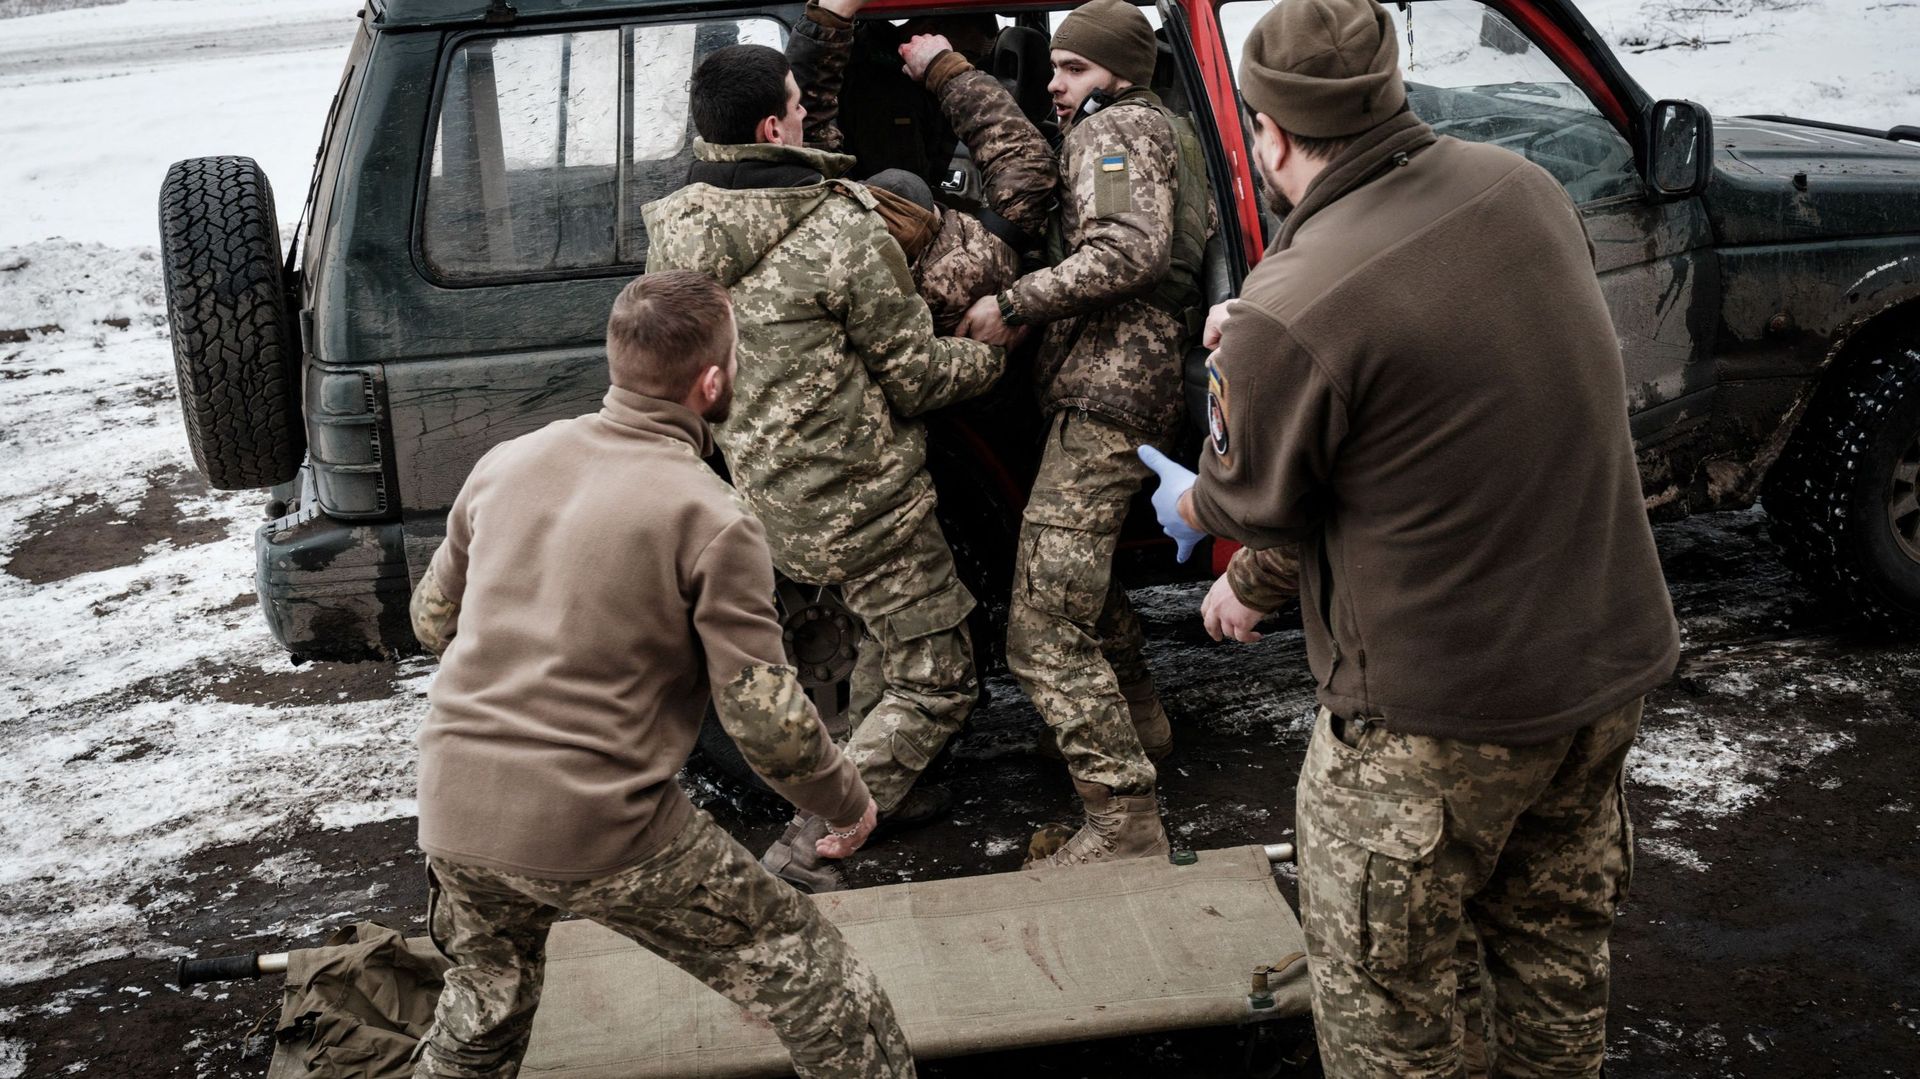 Des ambulanciers reçoivent un militaire ukrainien blessé qui a marché sur une mine terrestre antipersonnel à un point de stabilisation pour un traitement d’urgence, près de la ligne de front dans la région de Donetsk, le 29 janvier 2023, en pleine invasio